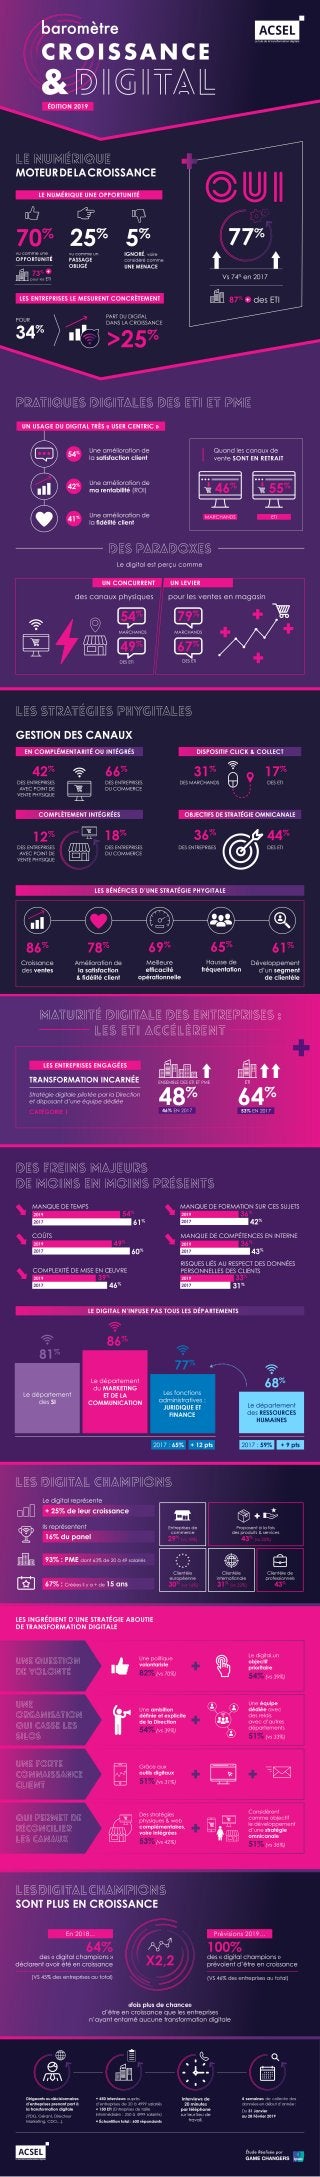 Baromètre Croissance & Digital - Edition 2019 / Infographie